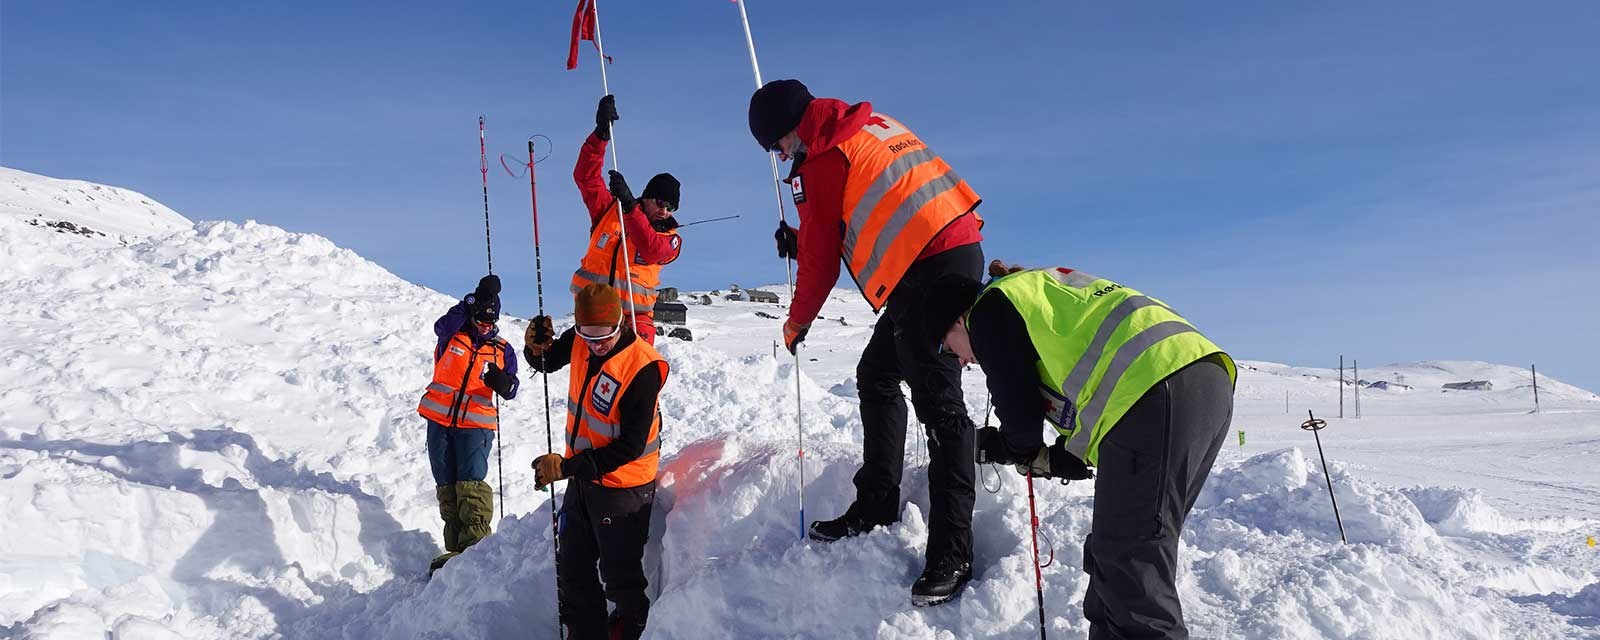 hjelpekorpsere måker i snø